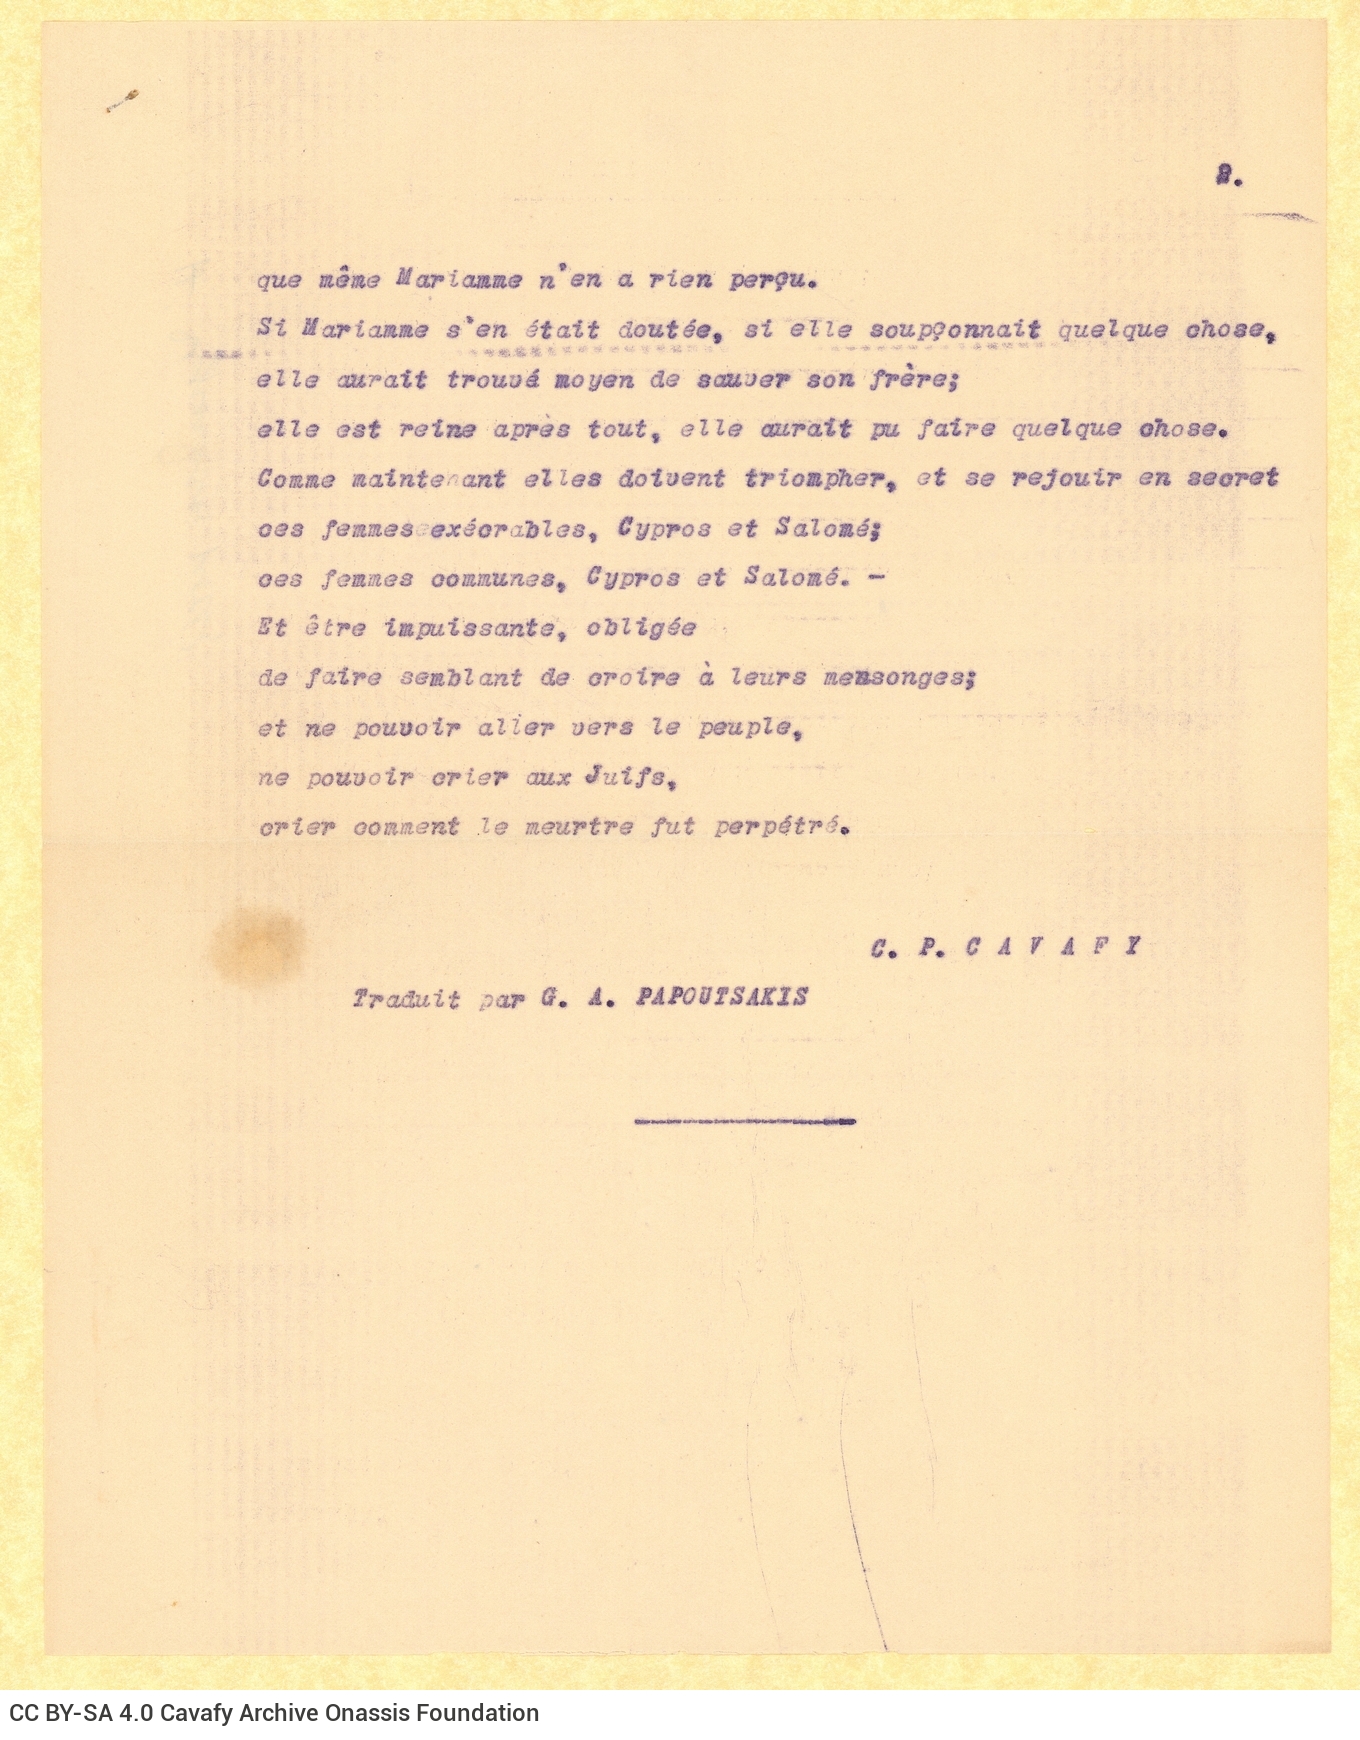 Δακτυλόγραφη γαλλική μετάφραση του ποιήματος «Αριστόβουλος» στη μί